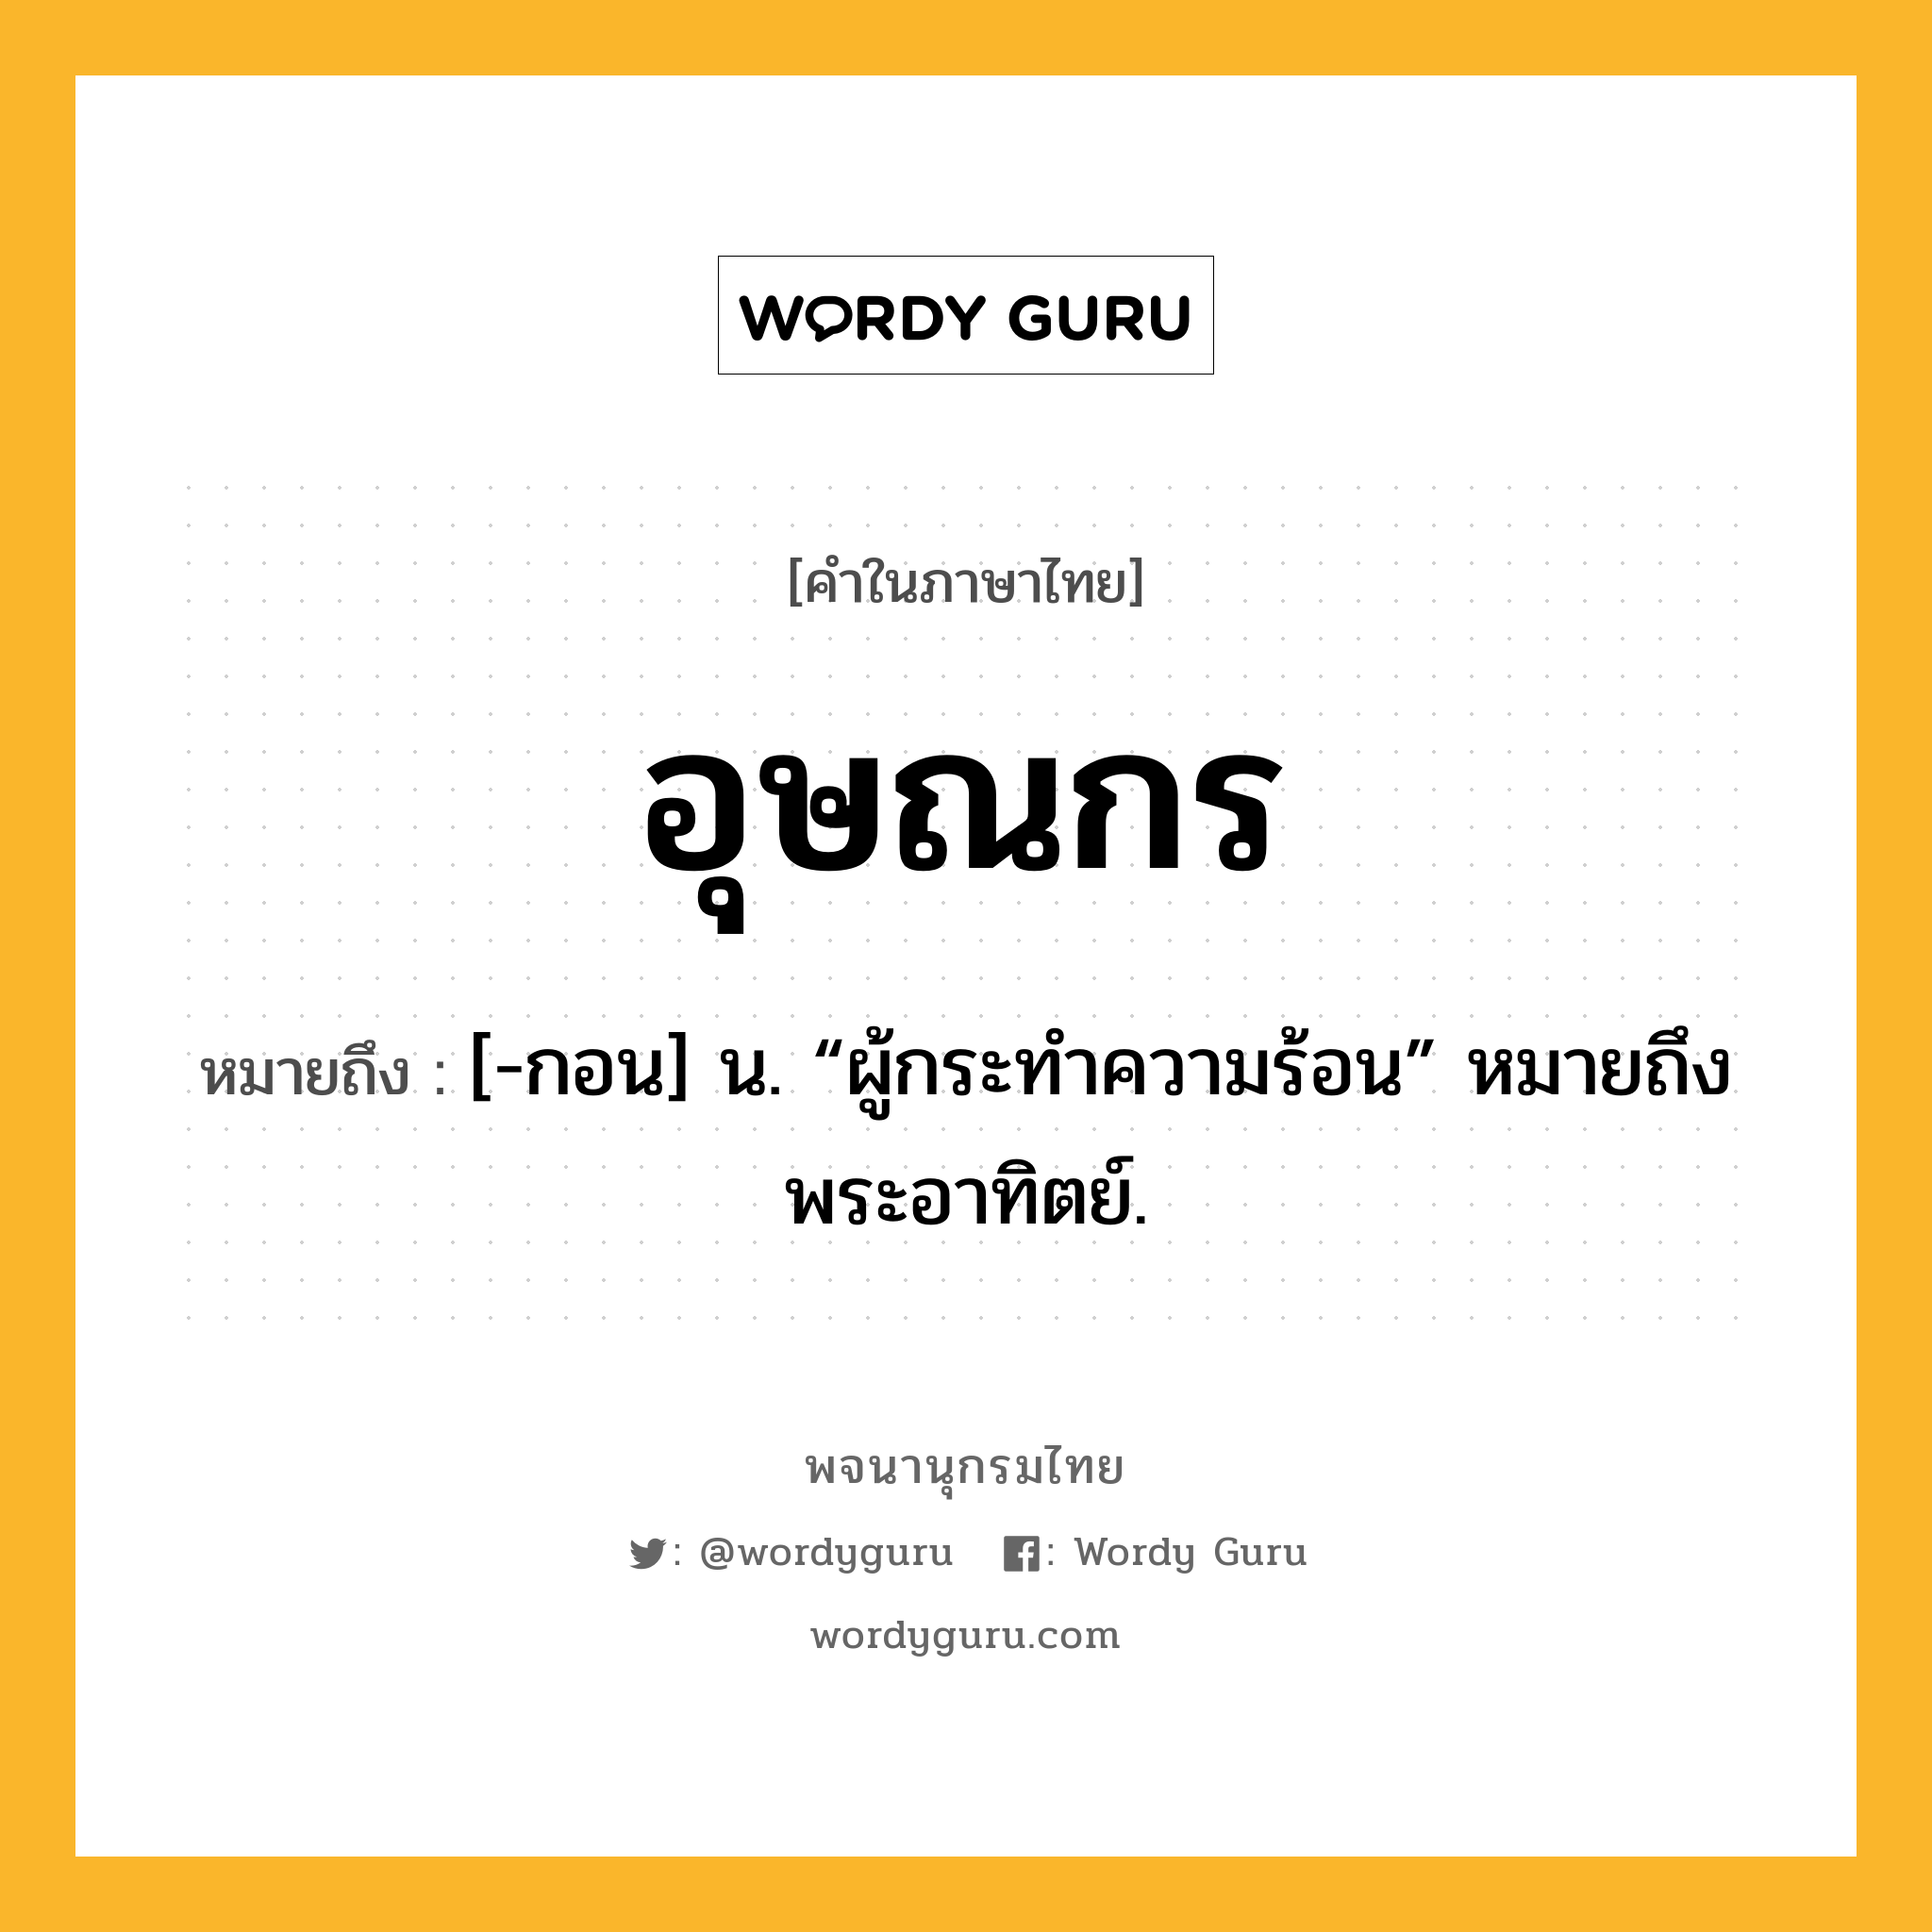 อุษณกร หมายถึงอะไร?, คำในภาษาไทย อุษณกร หมายถึง [-กอน] น. “ผู้กระทําความร้อน” หมายถึง พระอาทิตย์.